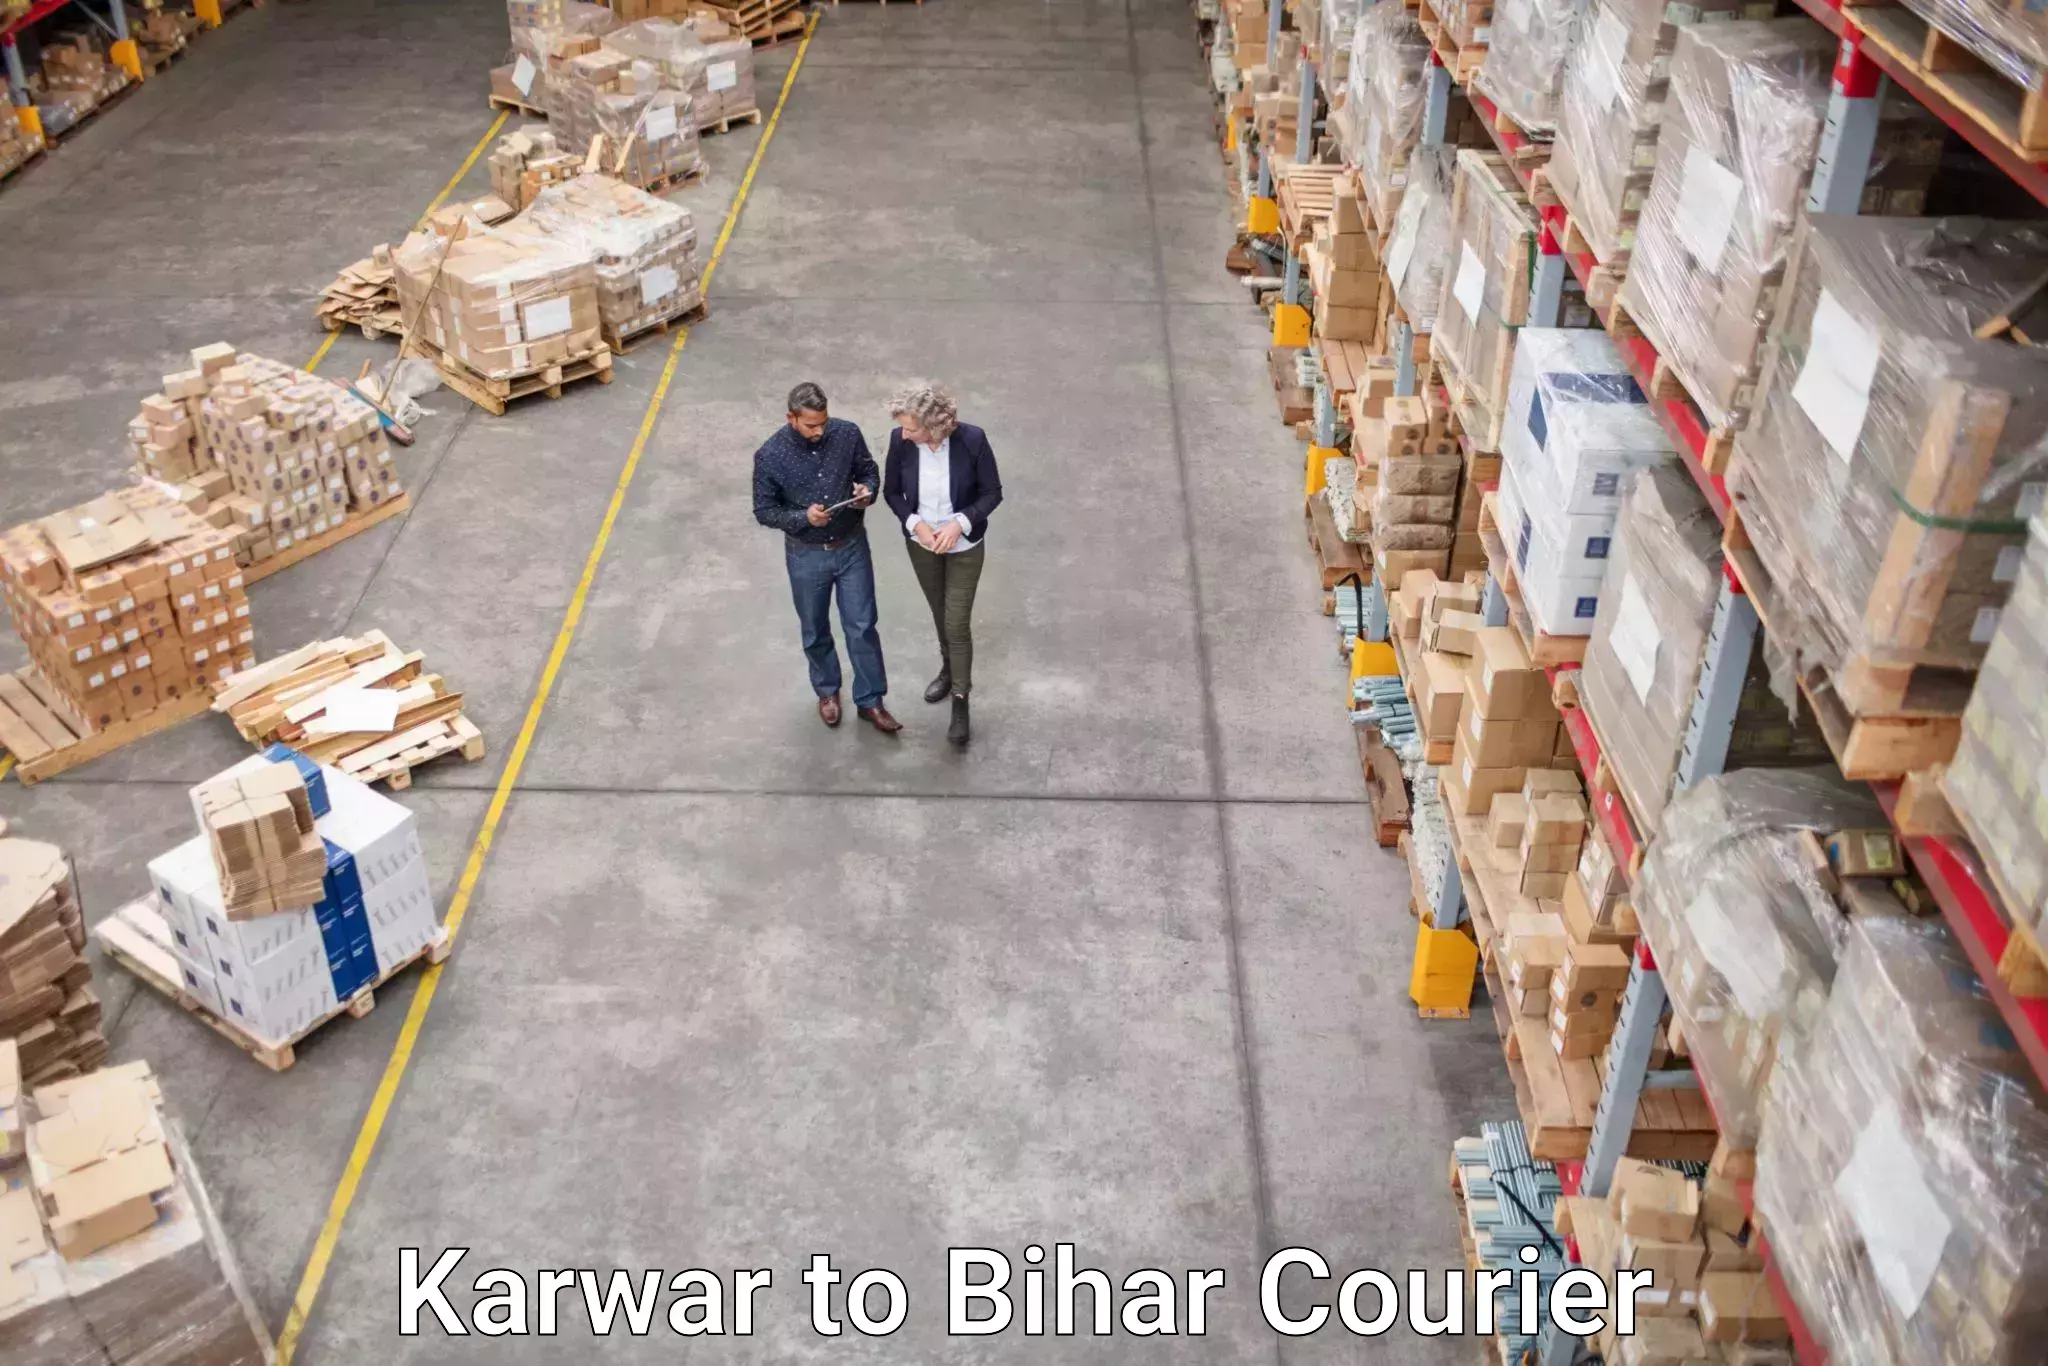 Easy access courier services Karwar to Baniapur